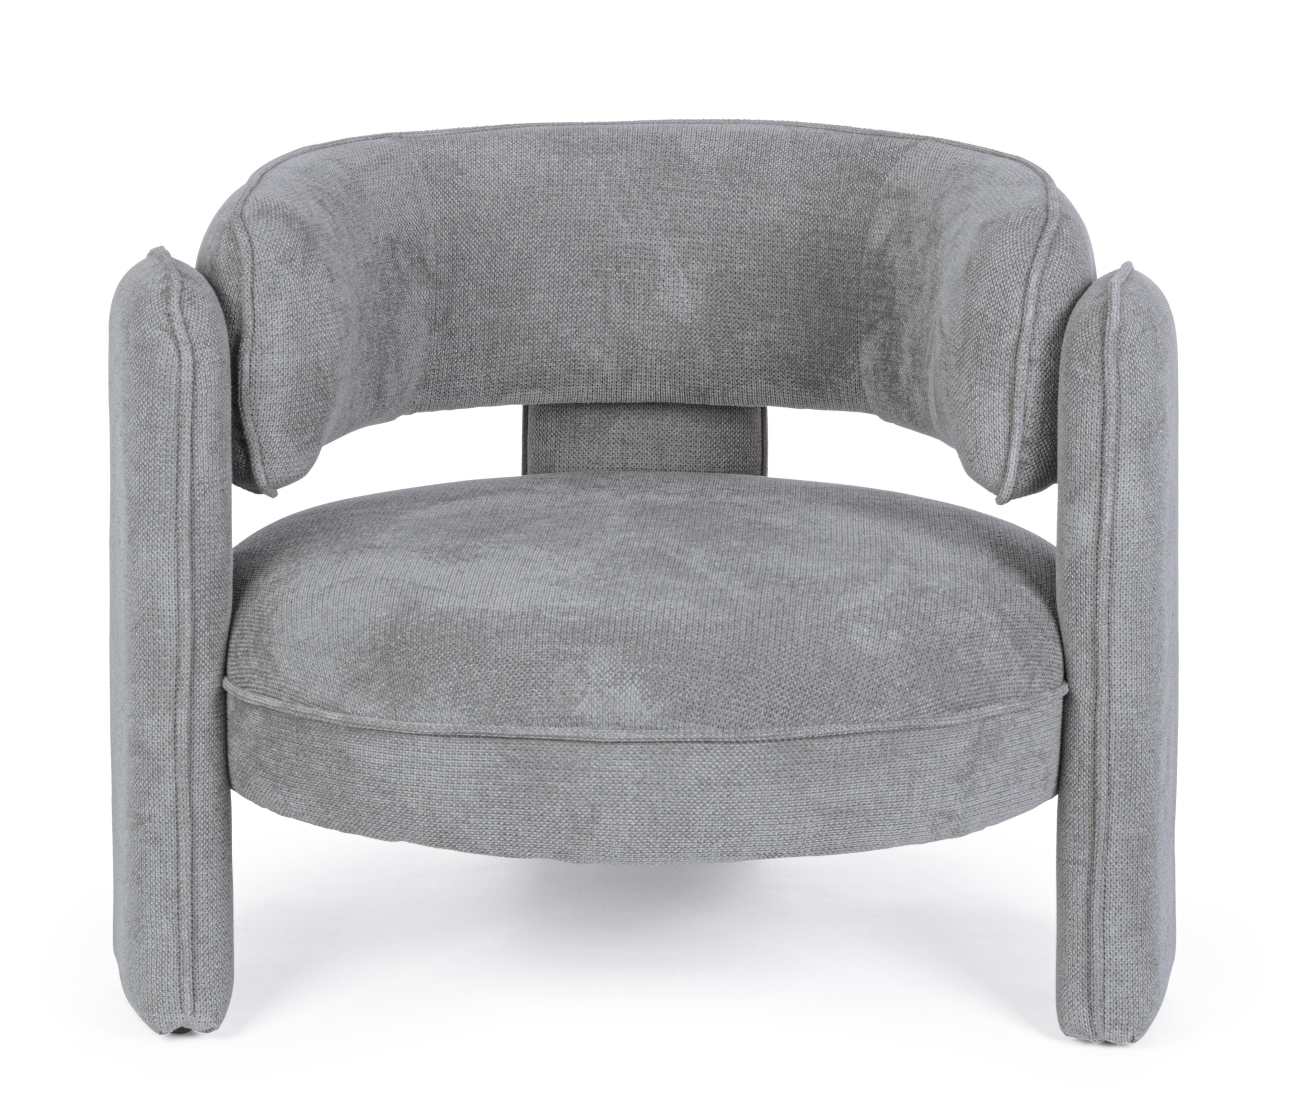 Der Sessel Aisha überzeugt mit seinem modernen Stil. Gefertigt wurde er aus Stoff, welcher einen grauen Farbton besitzt. Der Sessel besitzt eine Sitzhöhe von 44 cm.